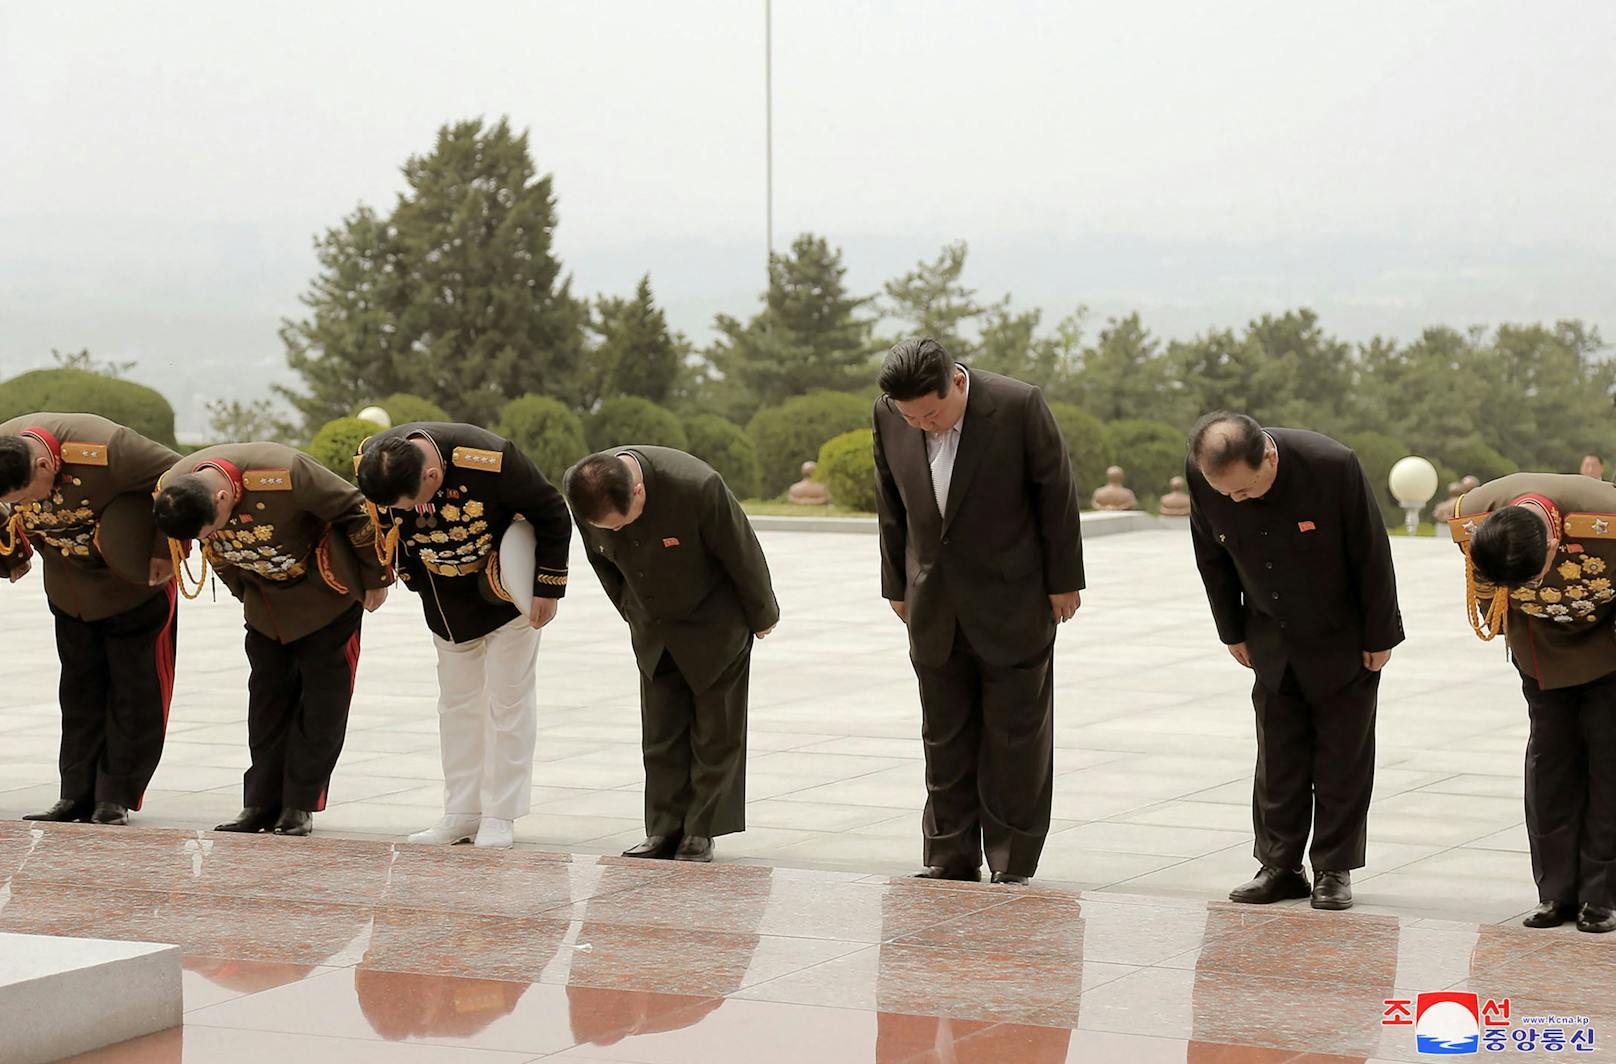 "Wir werden weiterhin Schritte unternehmen, um die nuklearen Fähigkeiten unseres Landes mit maximaler Geschwindigkeit zu stärken und zu entwickeln", sagte Kim laut eines Berichts der staatlichen Nachrichtenagentur KCNA vom Dienstag bei einer Militärparade in Pyongyang.